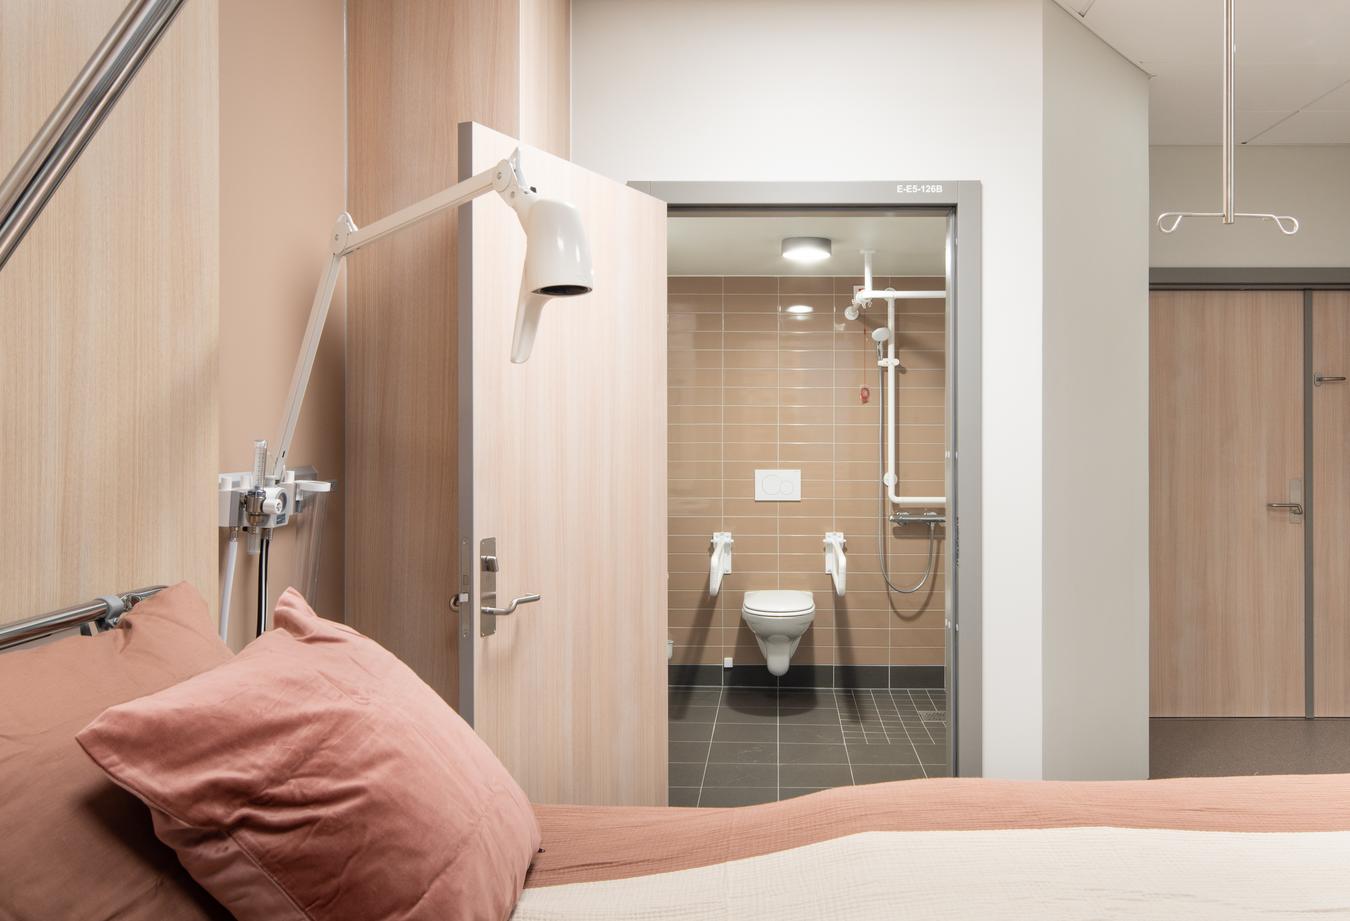 Patient room and bathroom in beige tones. Photo